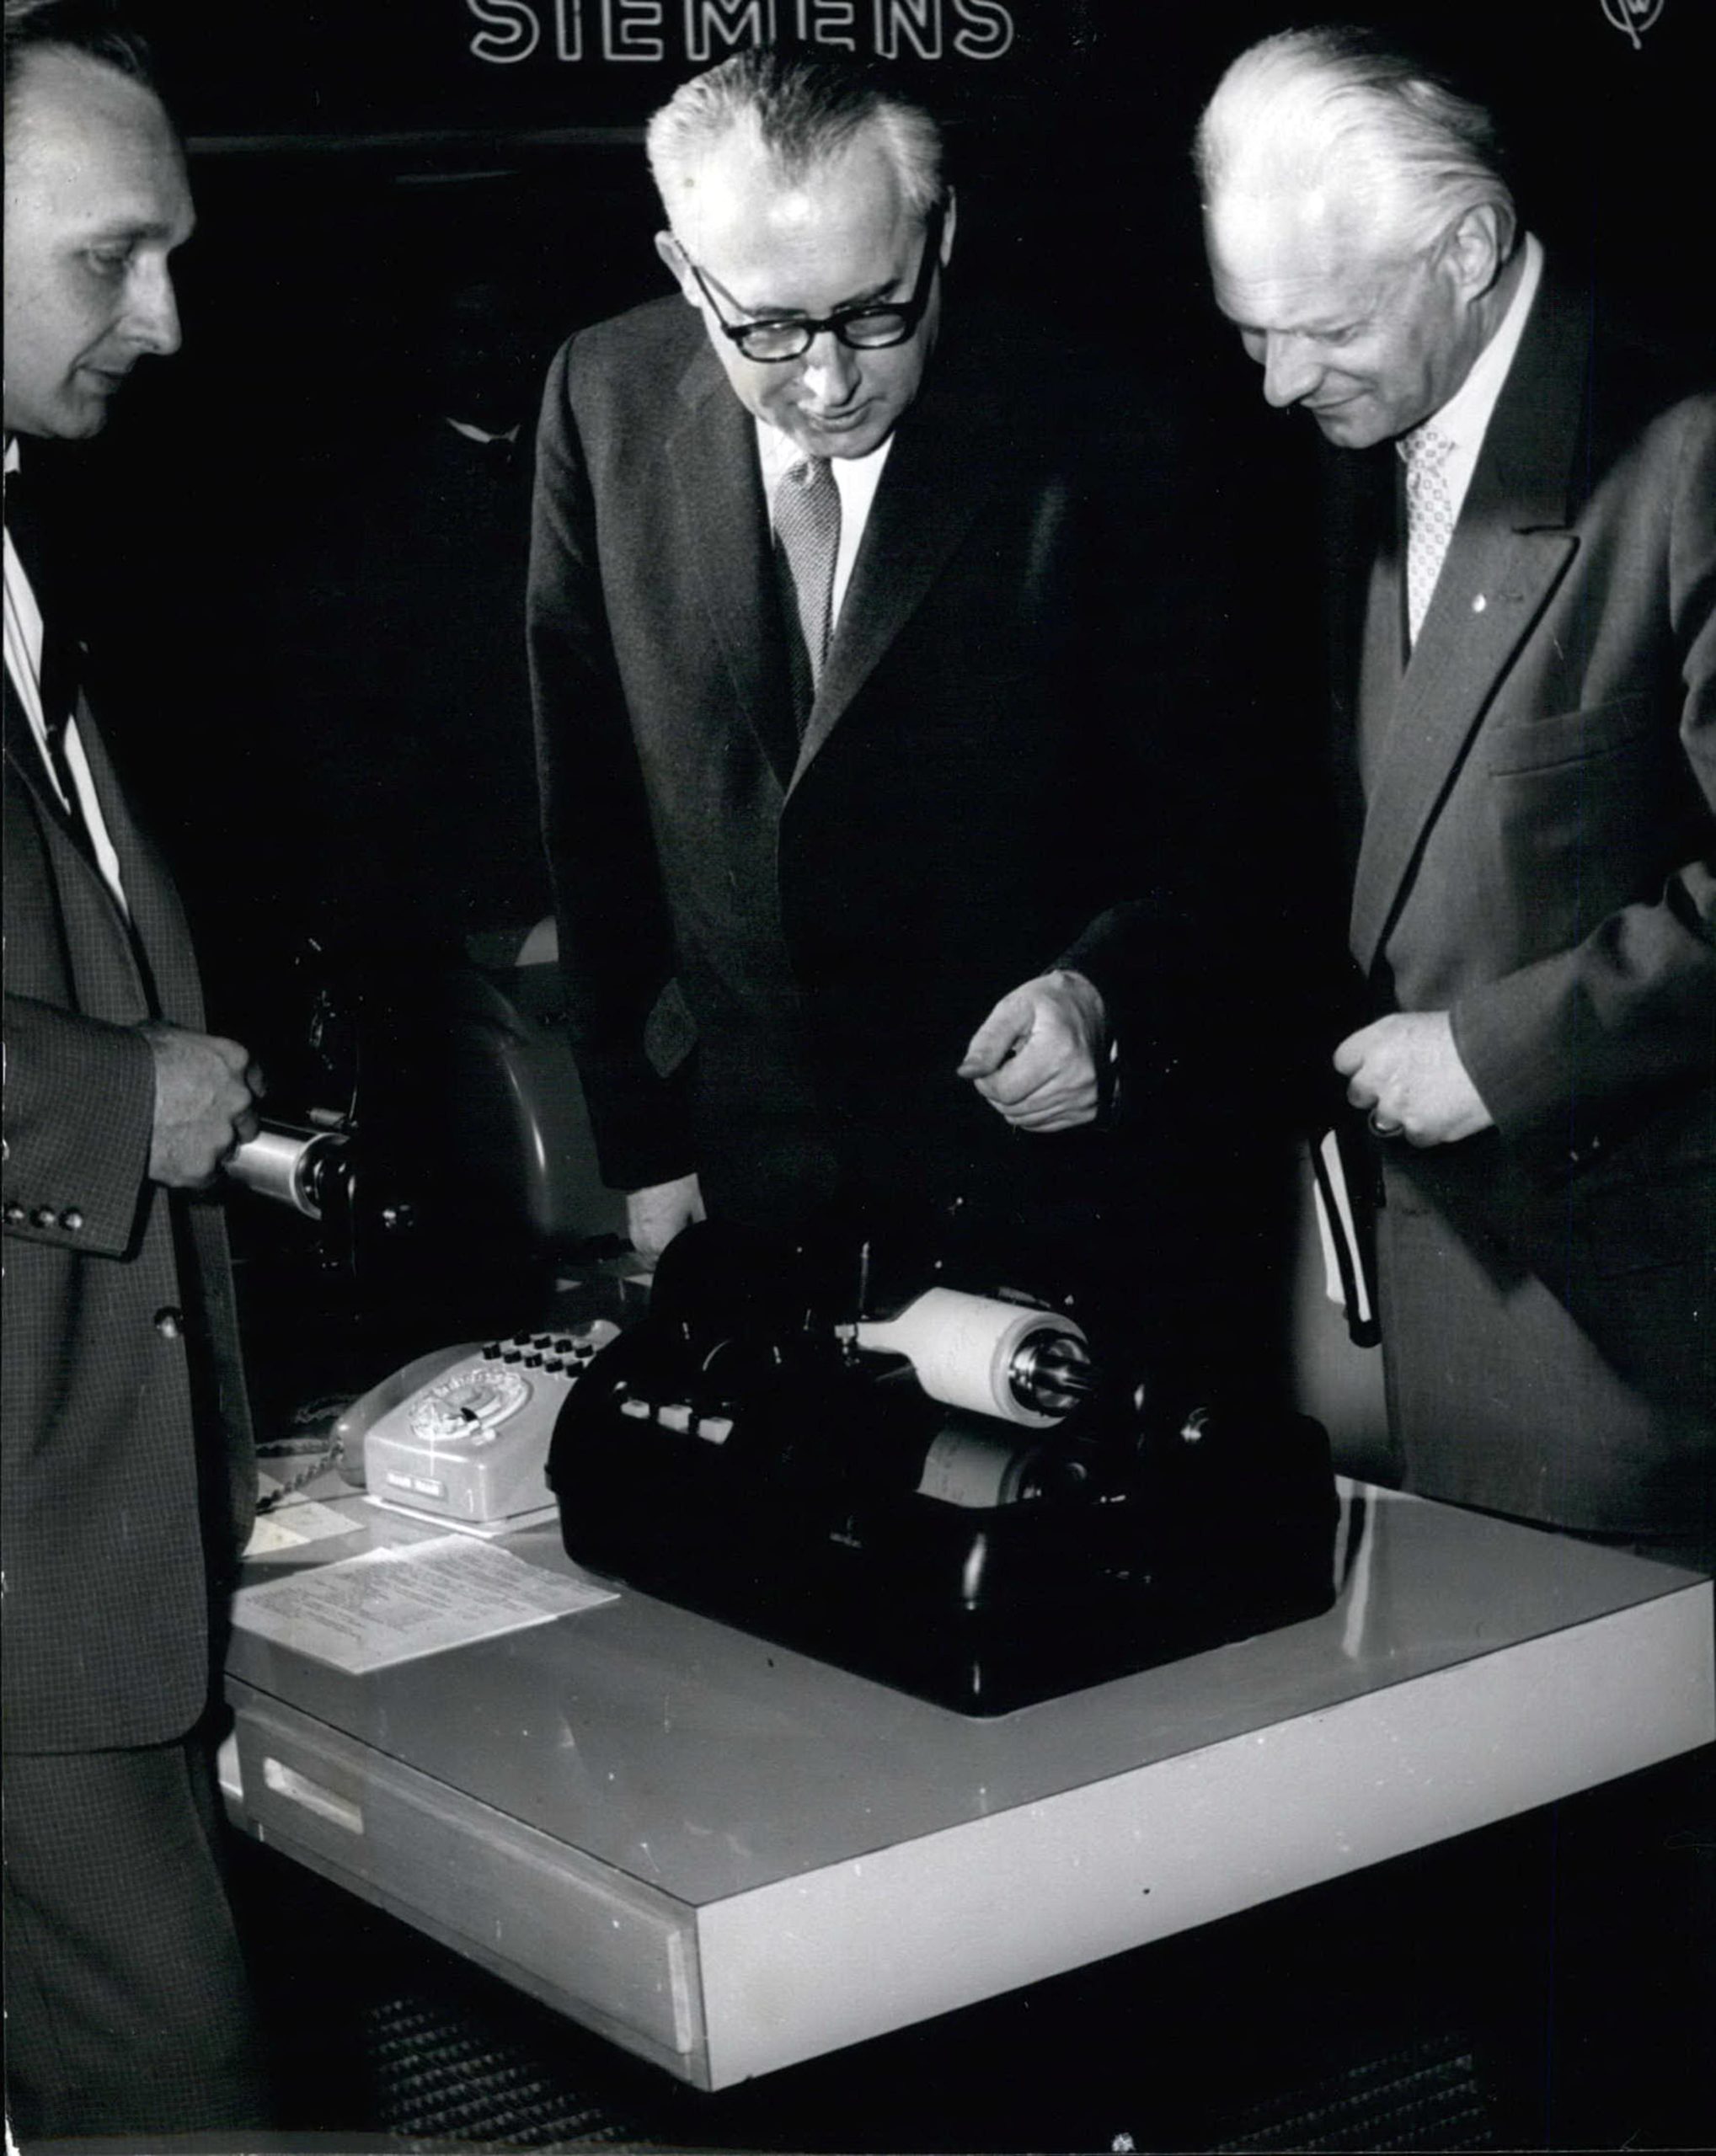 Erfindungen aus Brandenburg: Der Erfinder des Hellschreibers, Dr. Rudolf Hell, erklärt 1958 die innovative Technologie. Foto: Imago/Zuma/Keystone